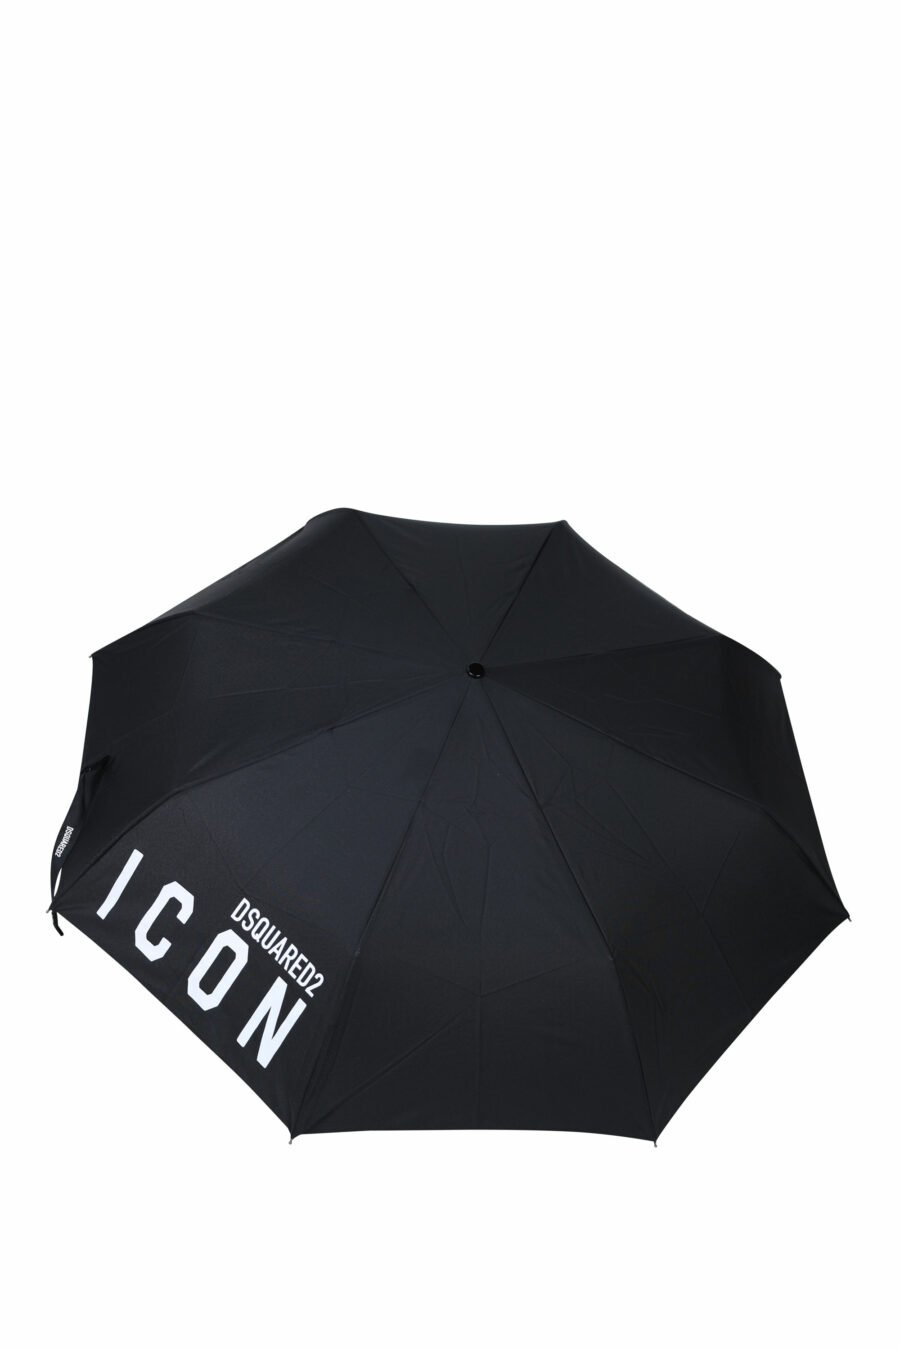 Schwarzer Regenschirm mit "icon"-Logo - 8055777215265